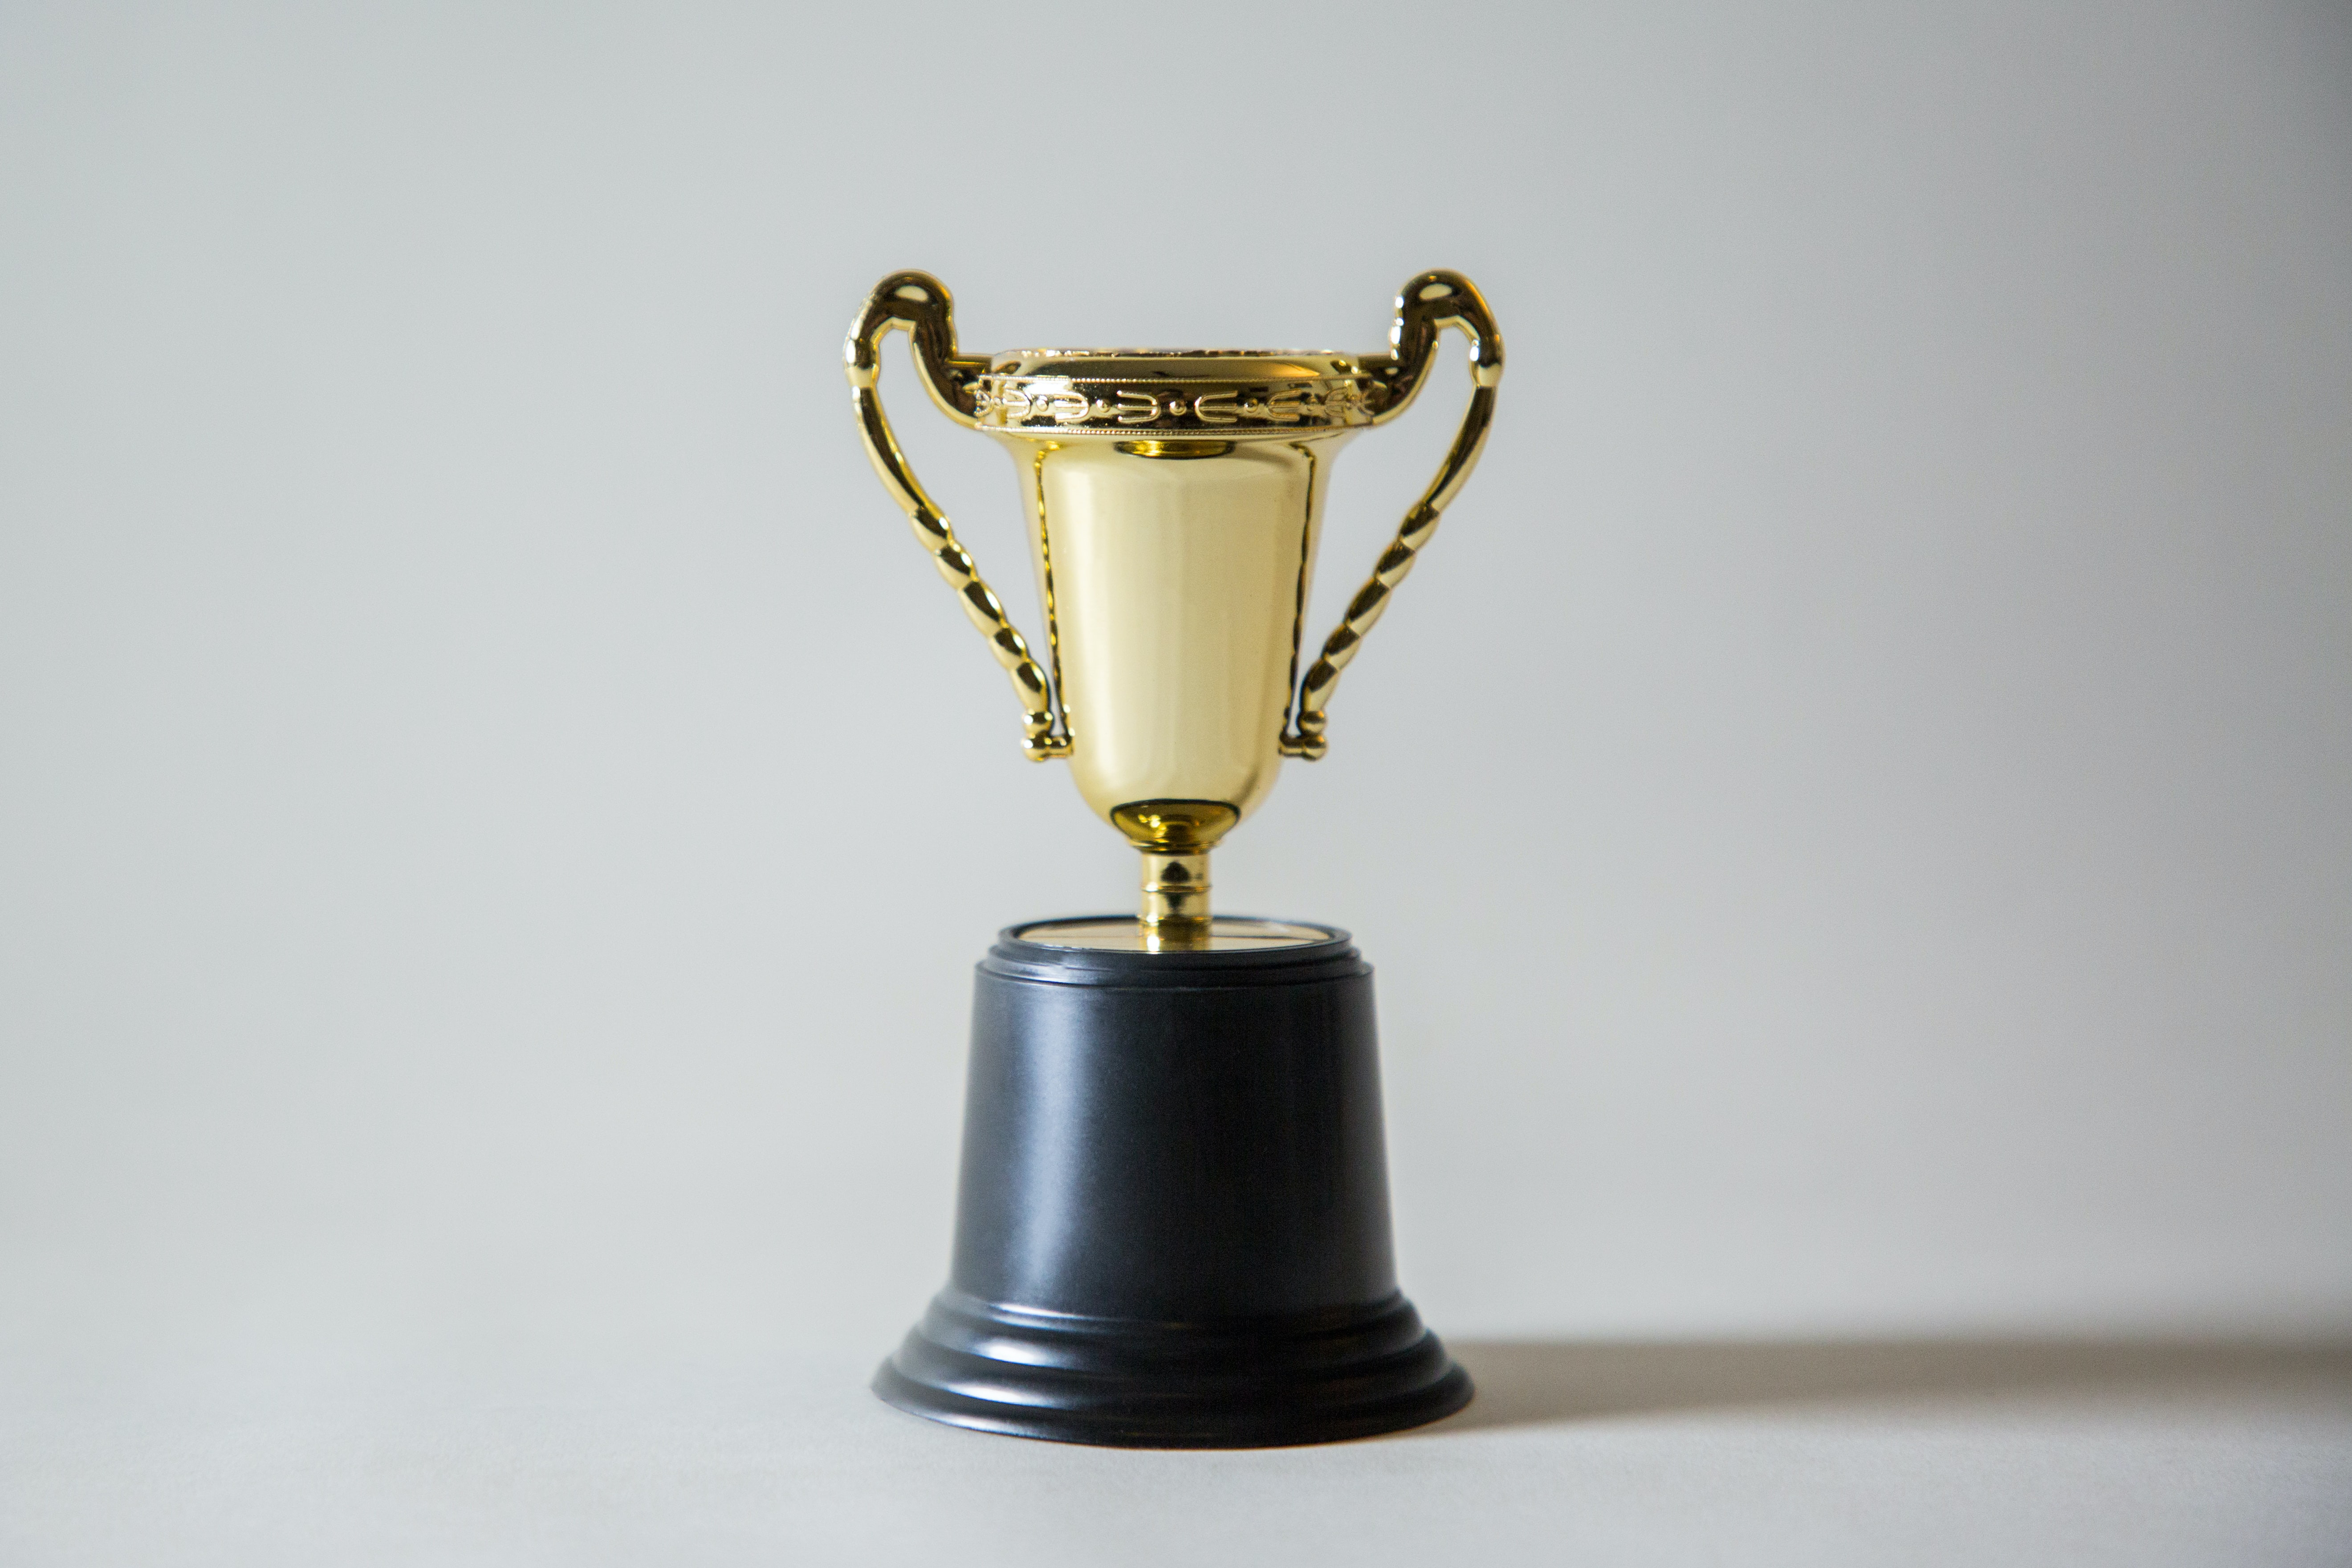 Golden trophy to symbolize awards